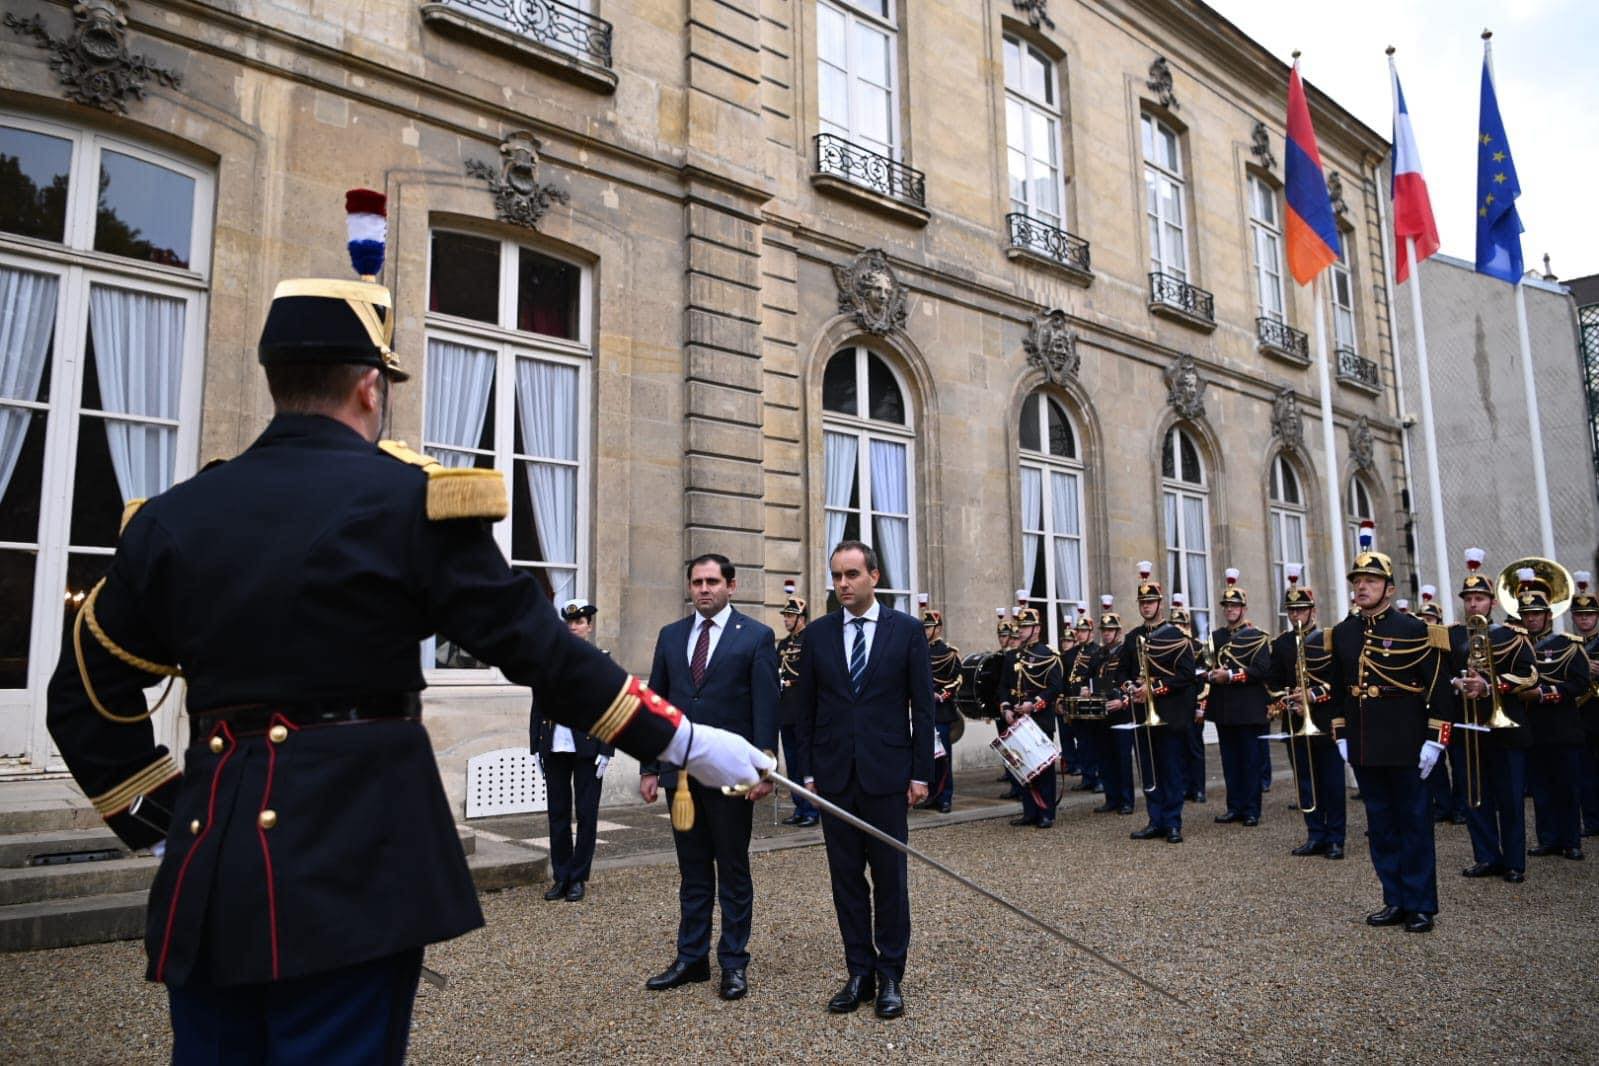 Ֆրանսիայի ՊՆ-ն պատվիրակություն կուղարկի Հայաստան՝ իրավիճակը գնահատելու համար